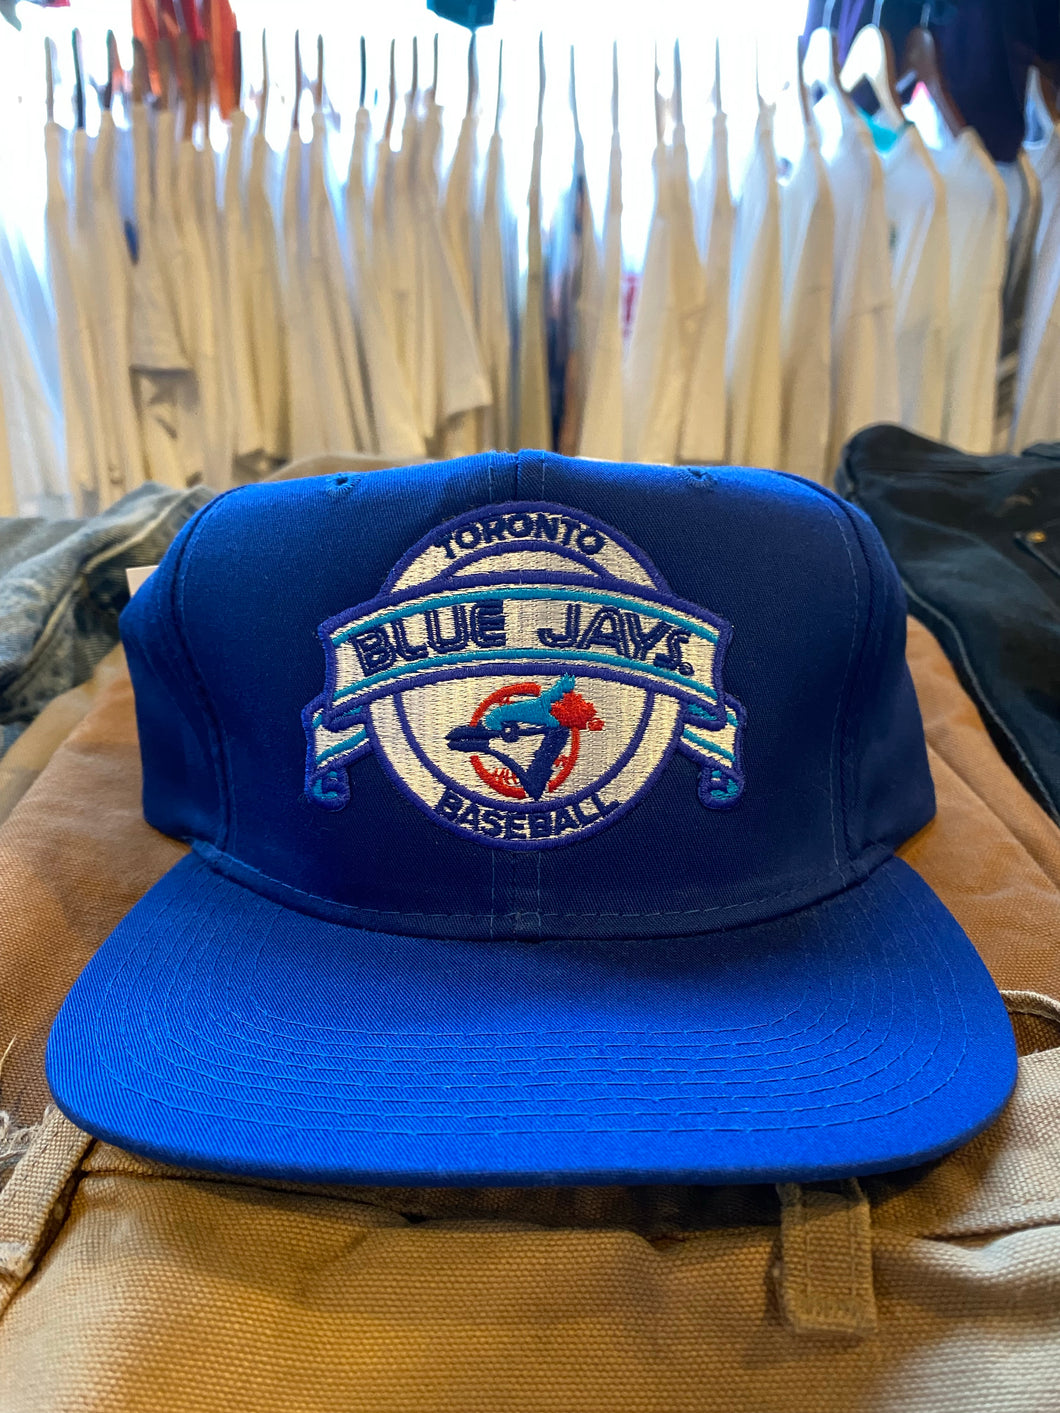 Vintage Toronto Blue Jays Snapback Hat